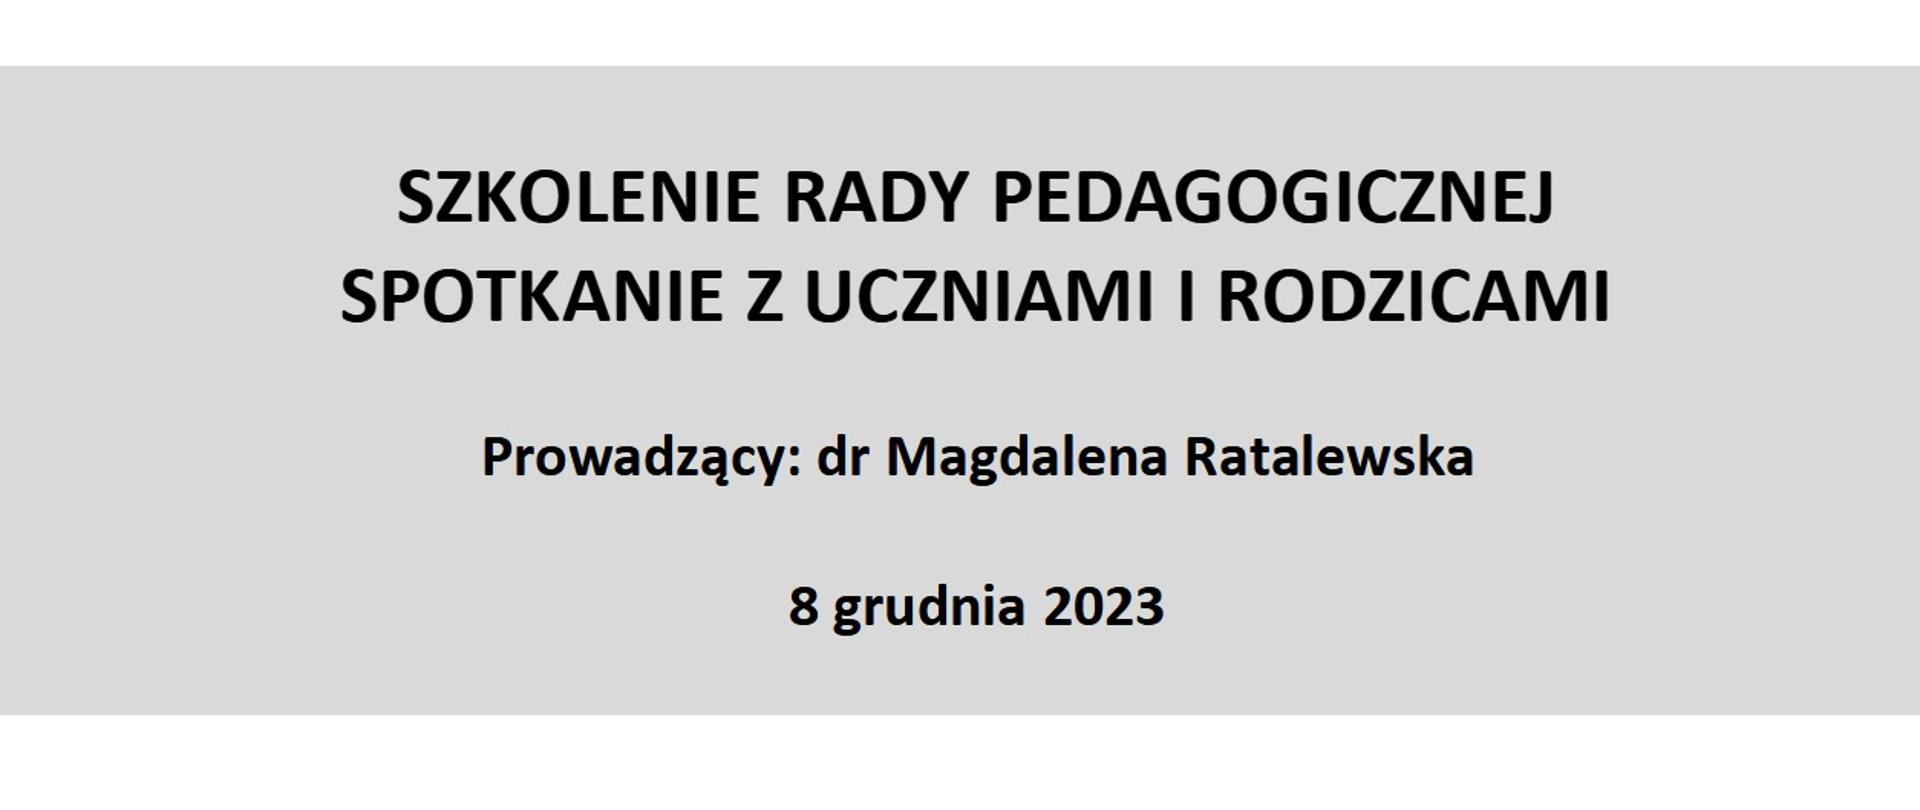 SZKOLENIE RADY PEDAGOGICZNEJ SPOTKANIE Z UCZNIAMI I RODZICAMI Prowadzący: dr Magdalena Ratalewska 8 grudnia 2023